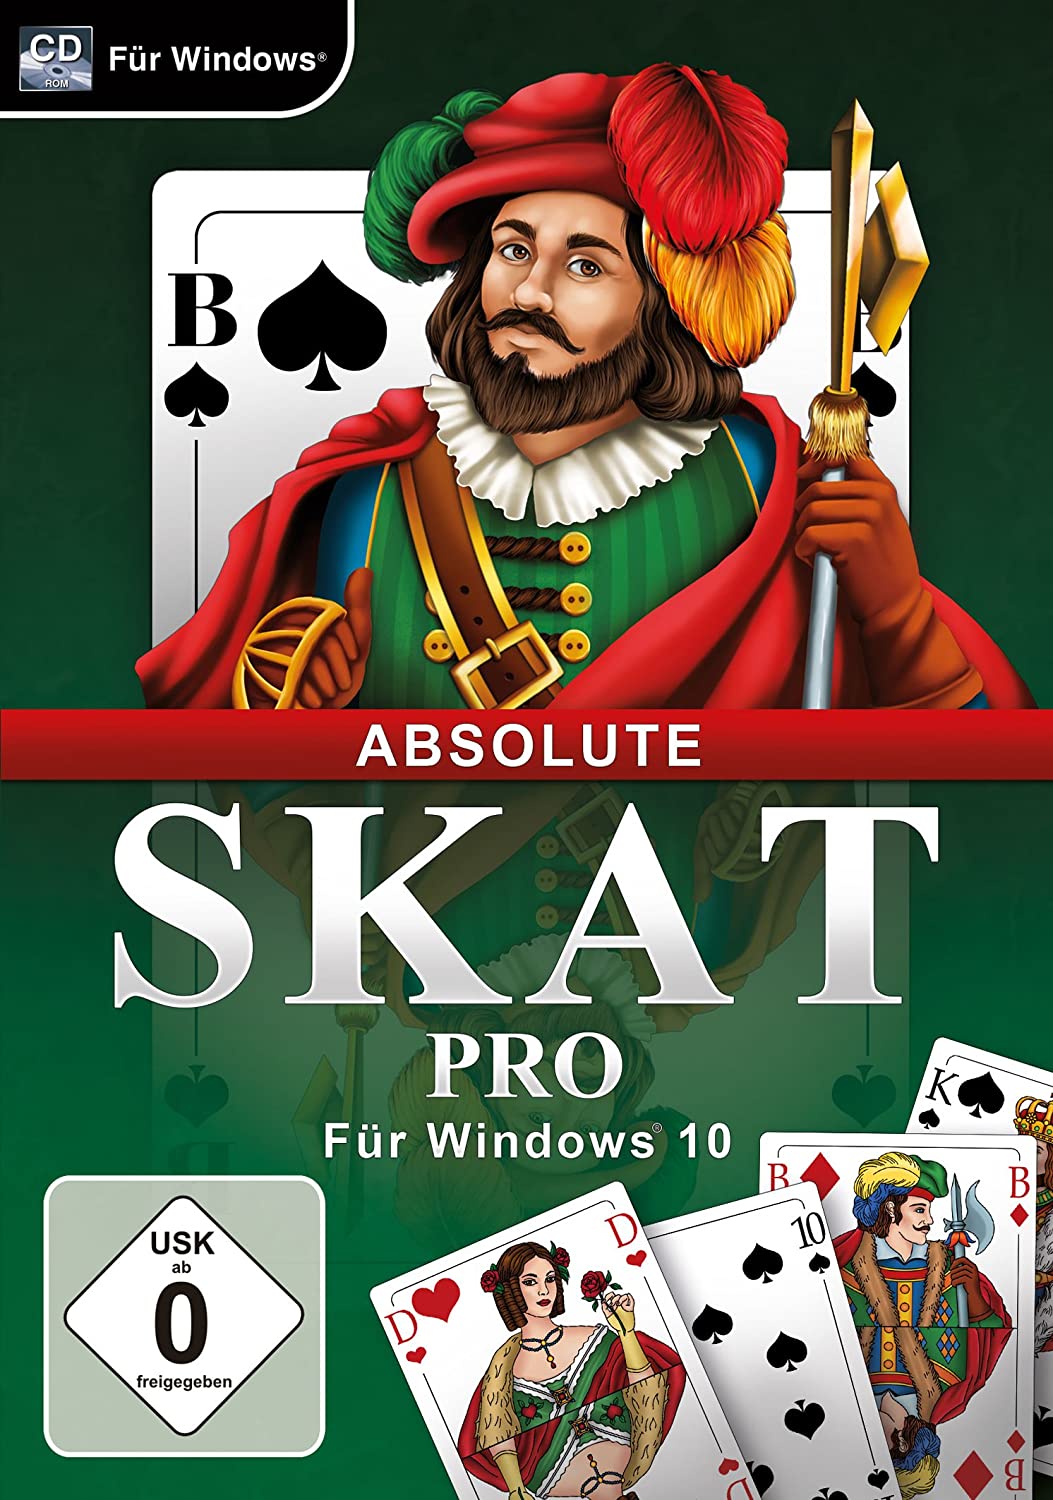 Absolute Skat Pro für Windows 10 [PC]